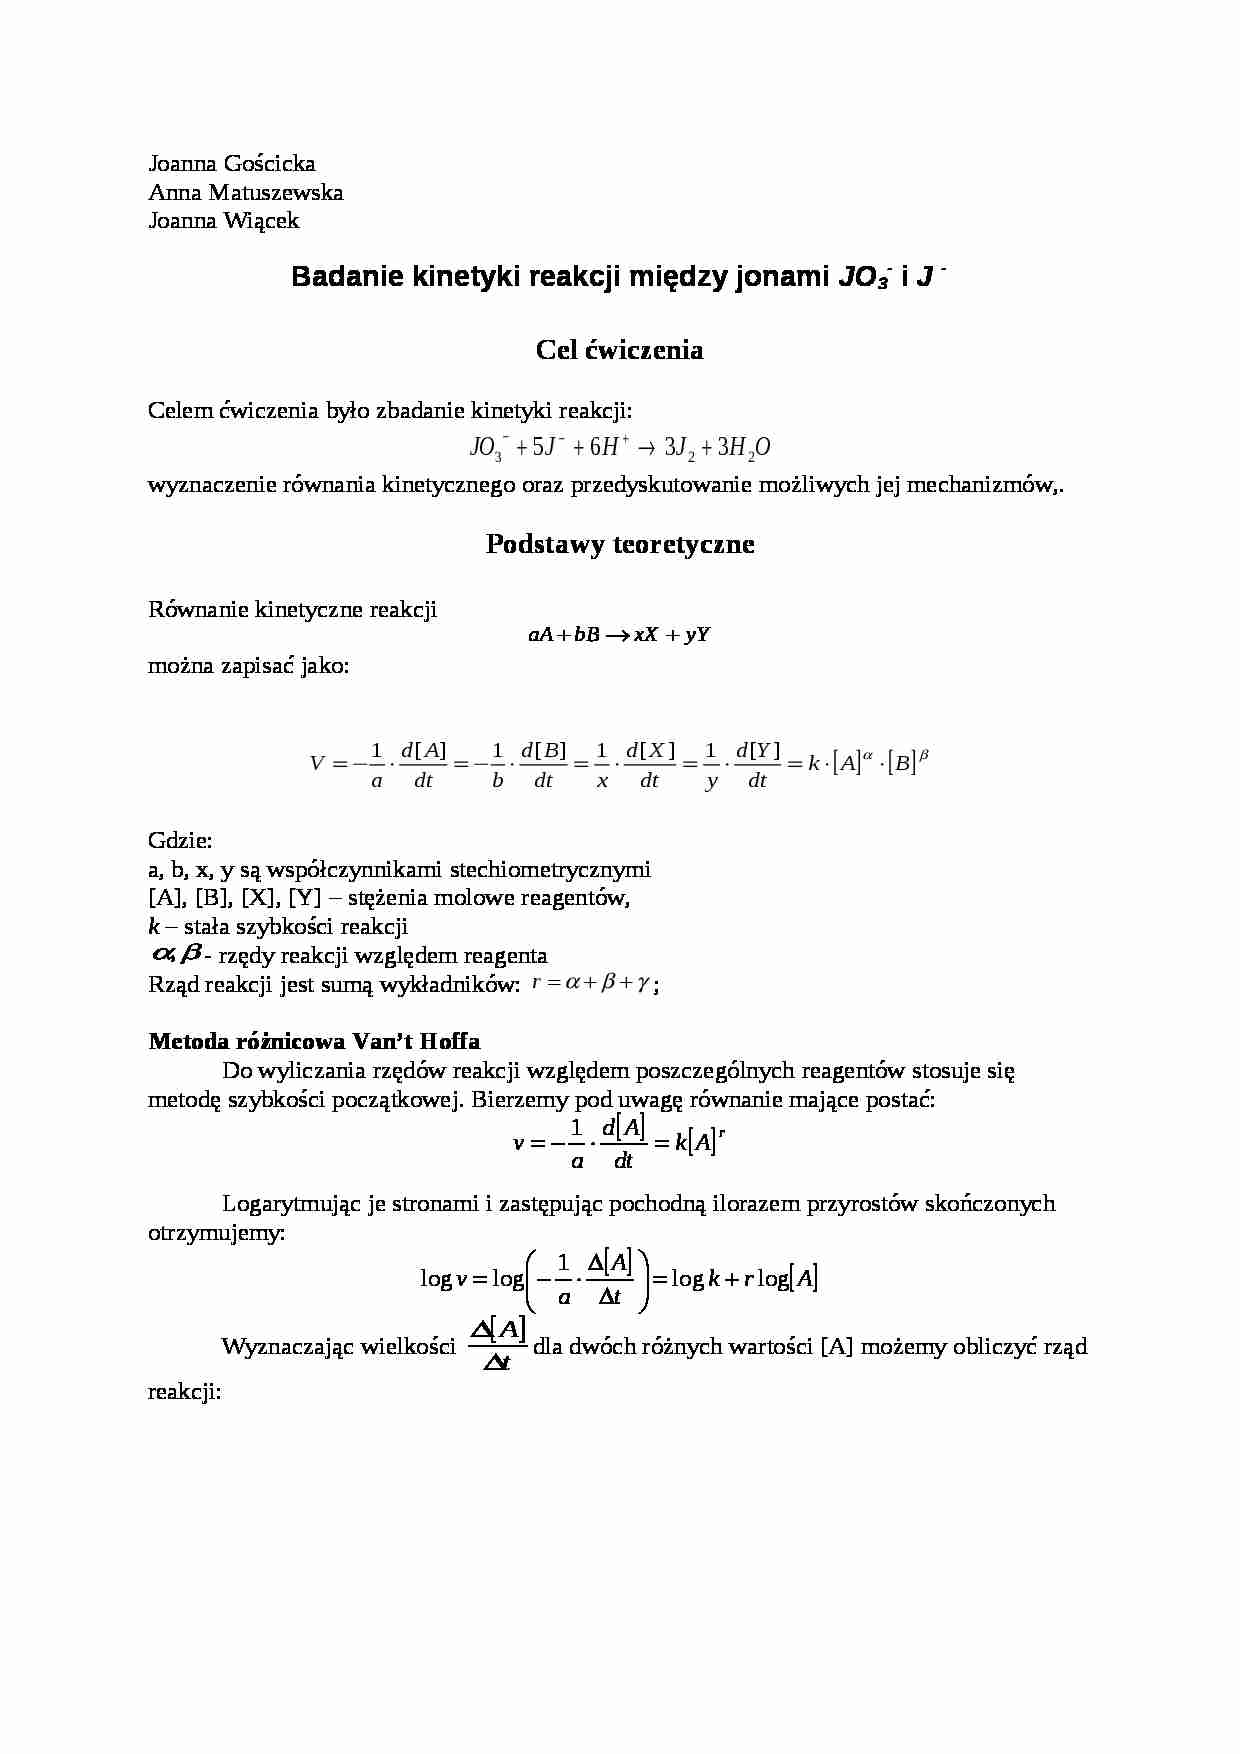 Badanie kinetyki reakcji między jonami - omówienie - strona 1